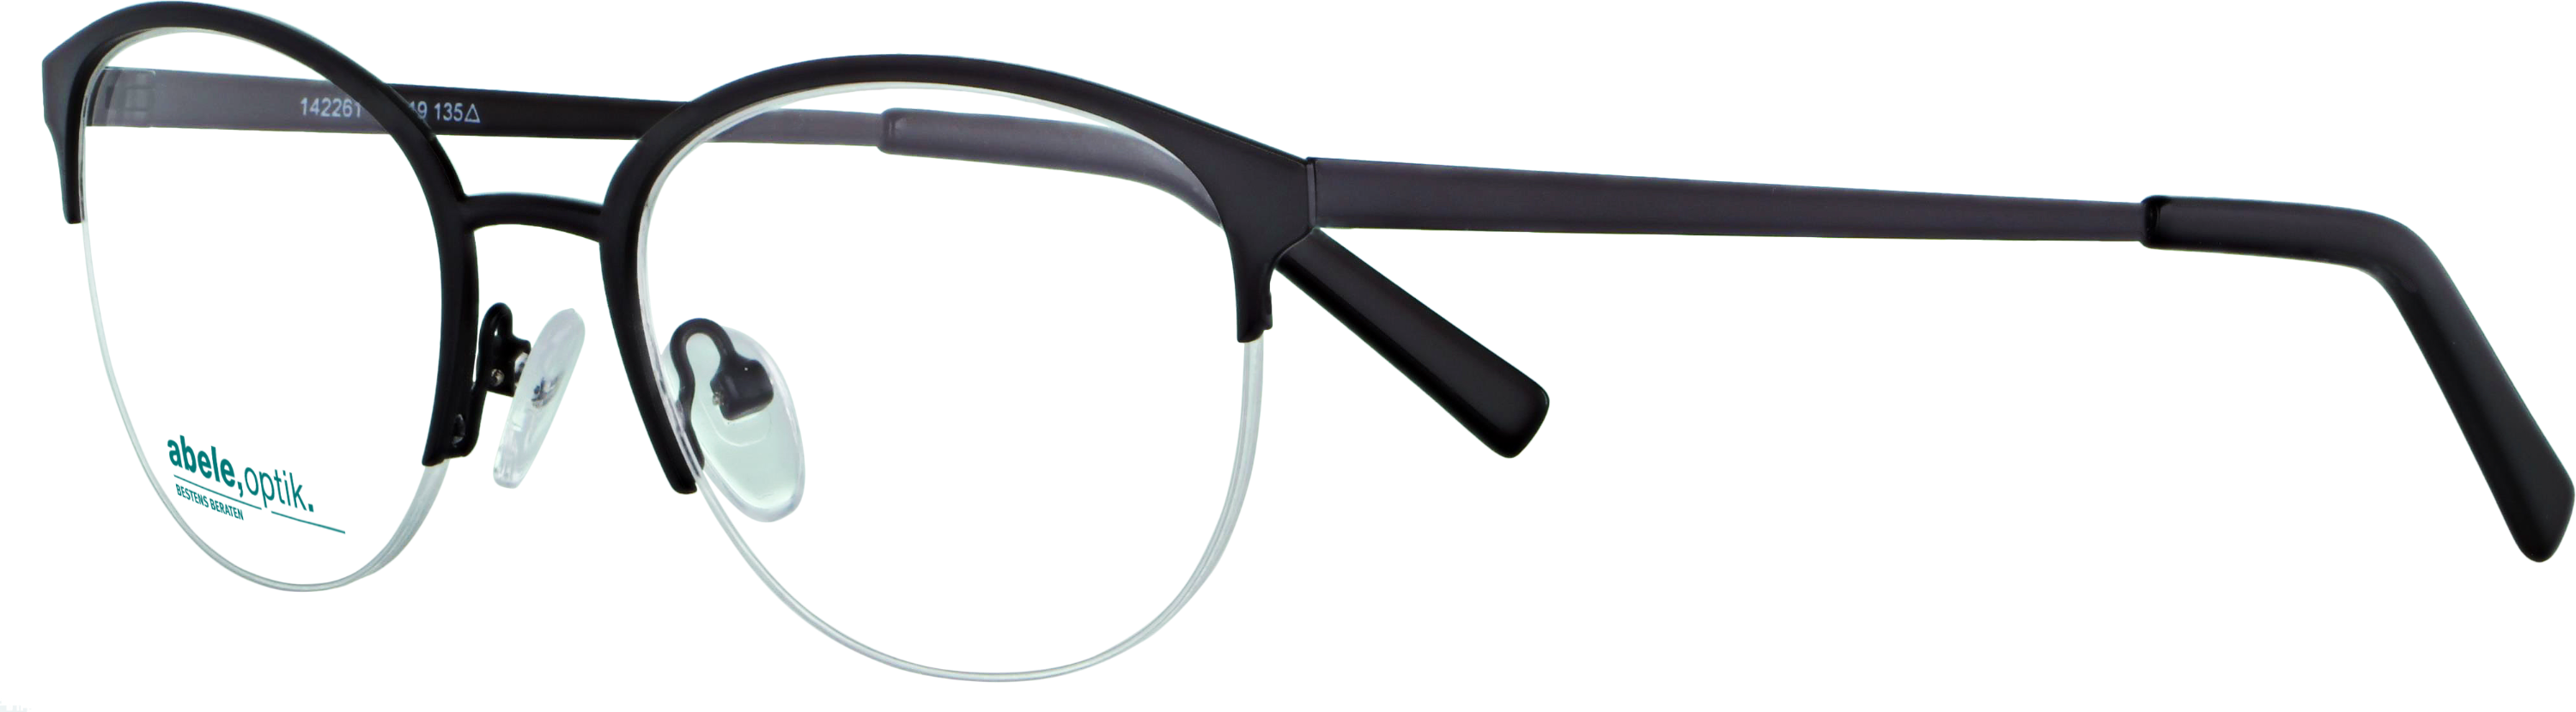 Das Bild zeigt die Korrektionsbrille 142261 von der Marke Abele Optik in schwarz matt.